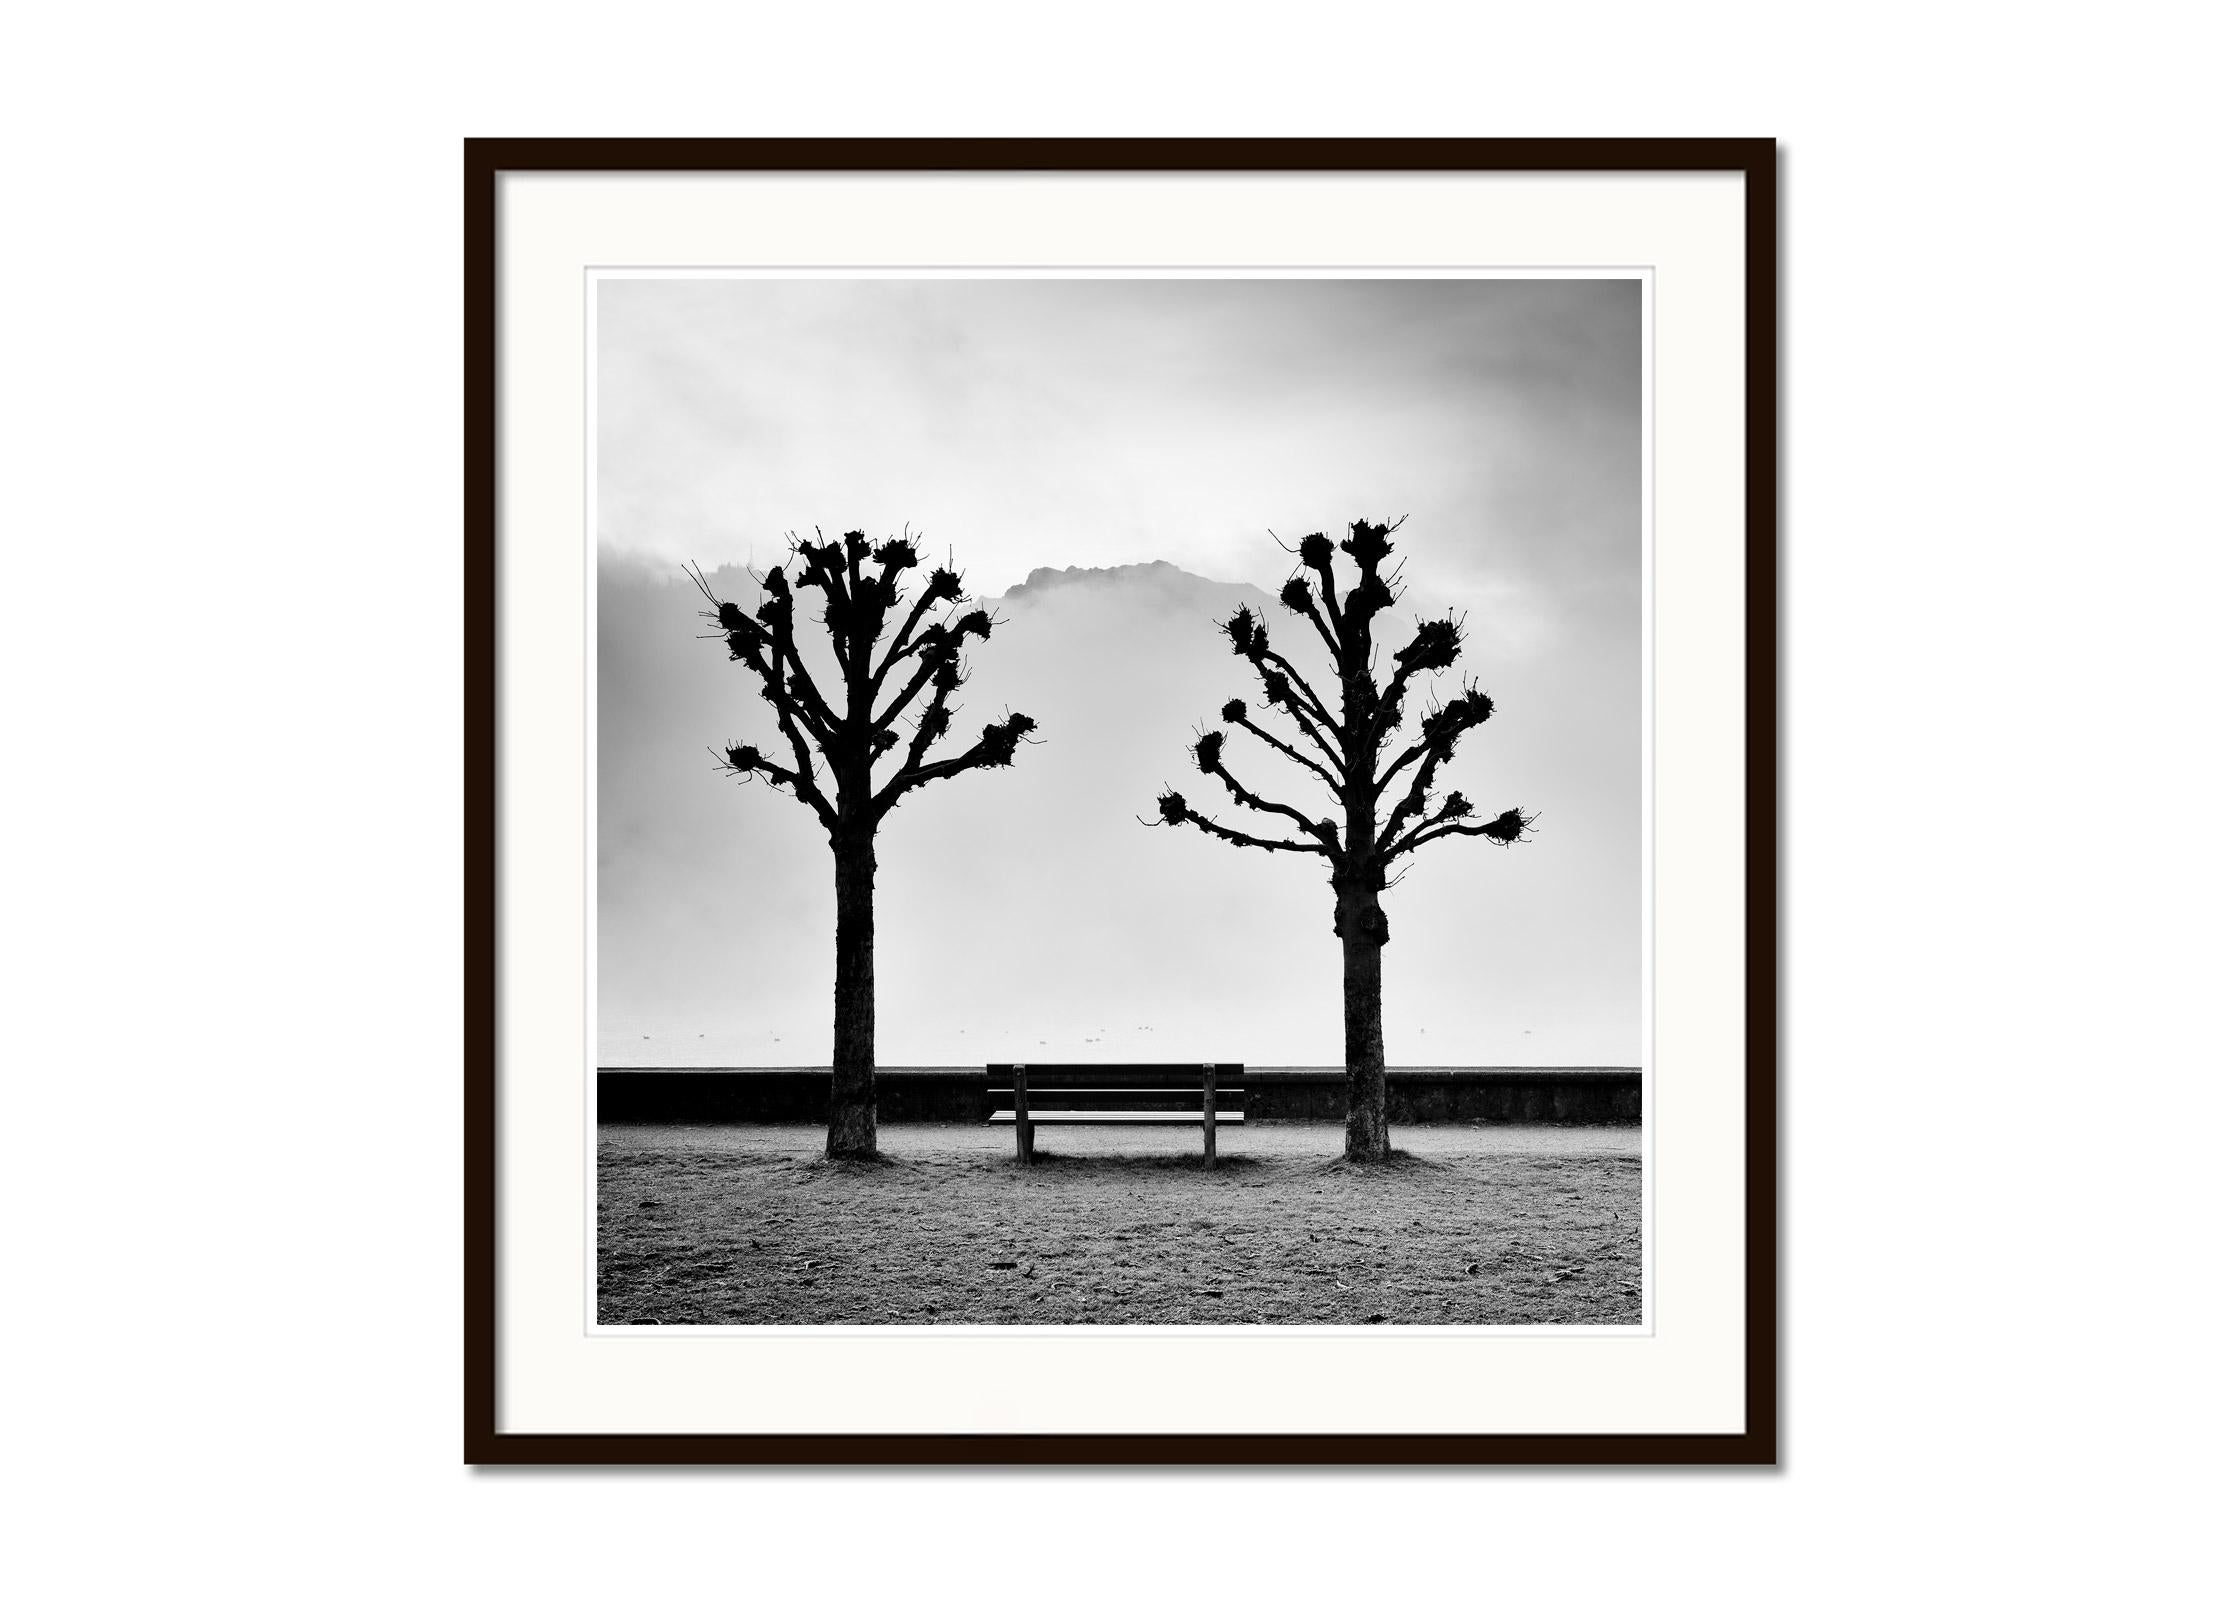 Kastanienbäume auf der Promenade, Traunsee, b&w Kunstfotografie, Landschaft (Grau), Landscape Print, von Gerald Berghammer